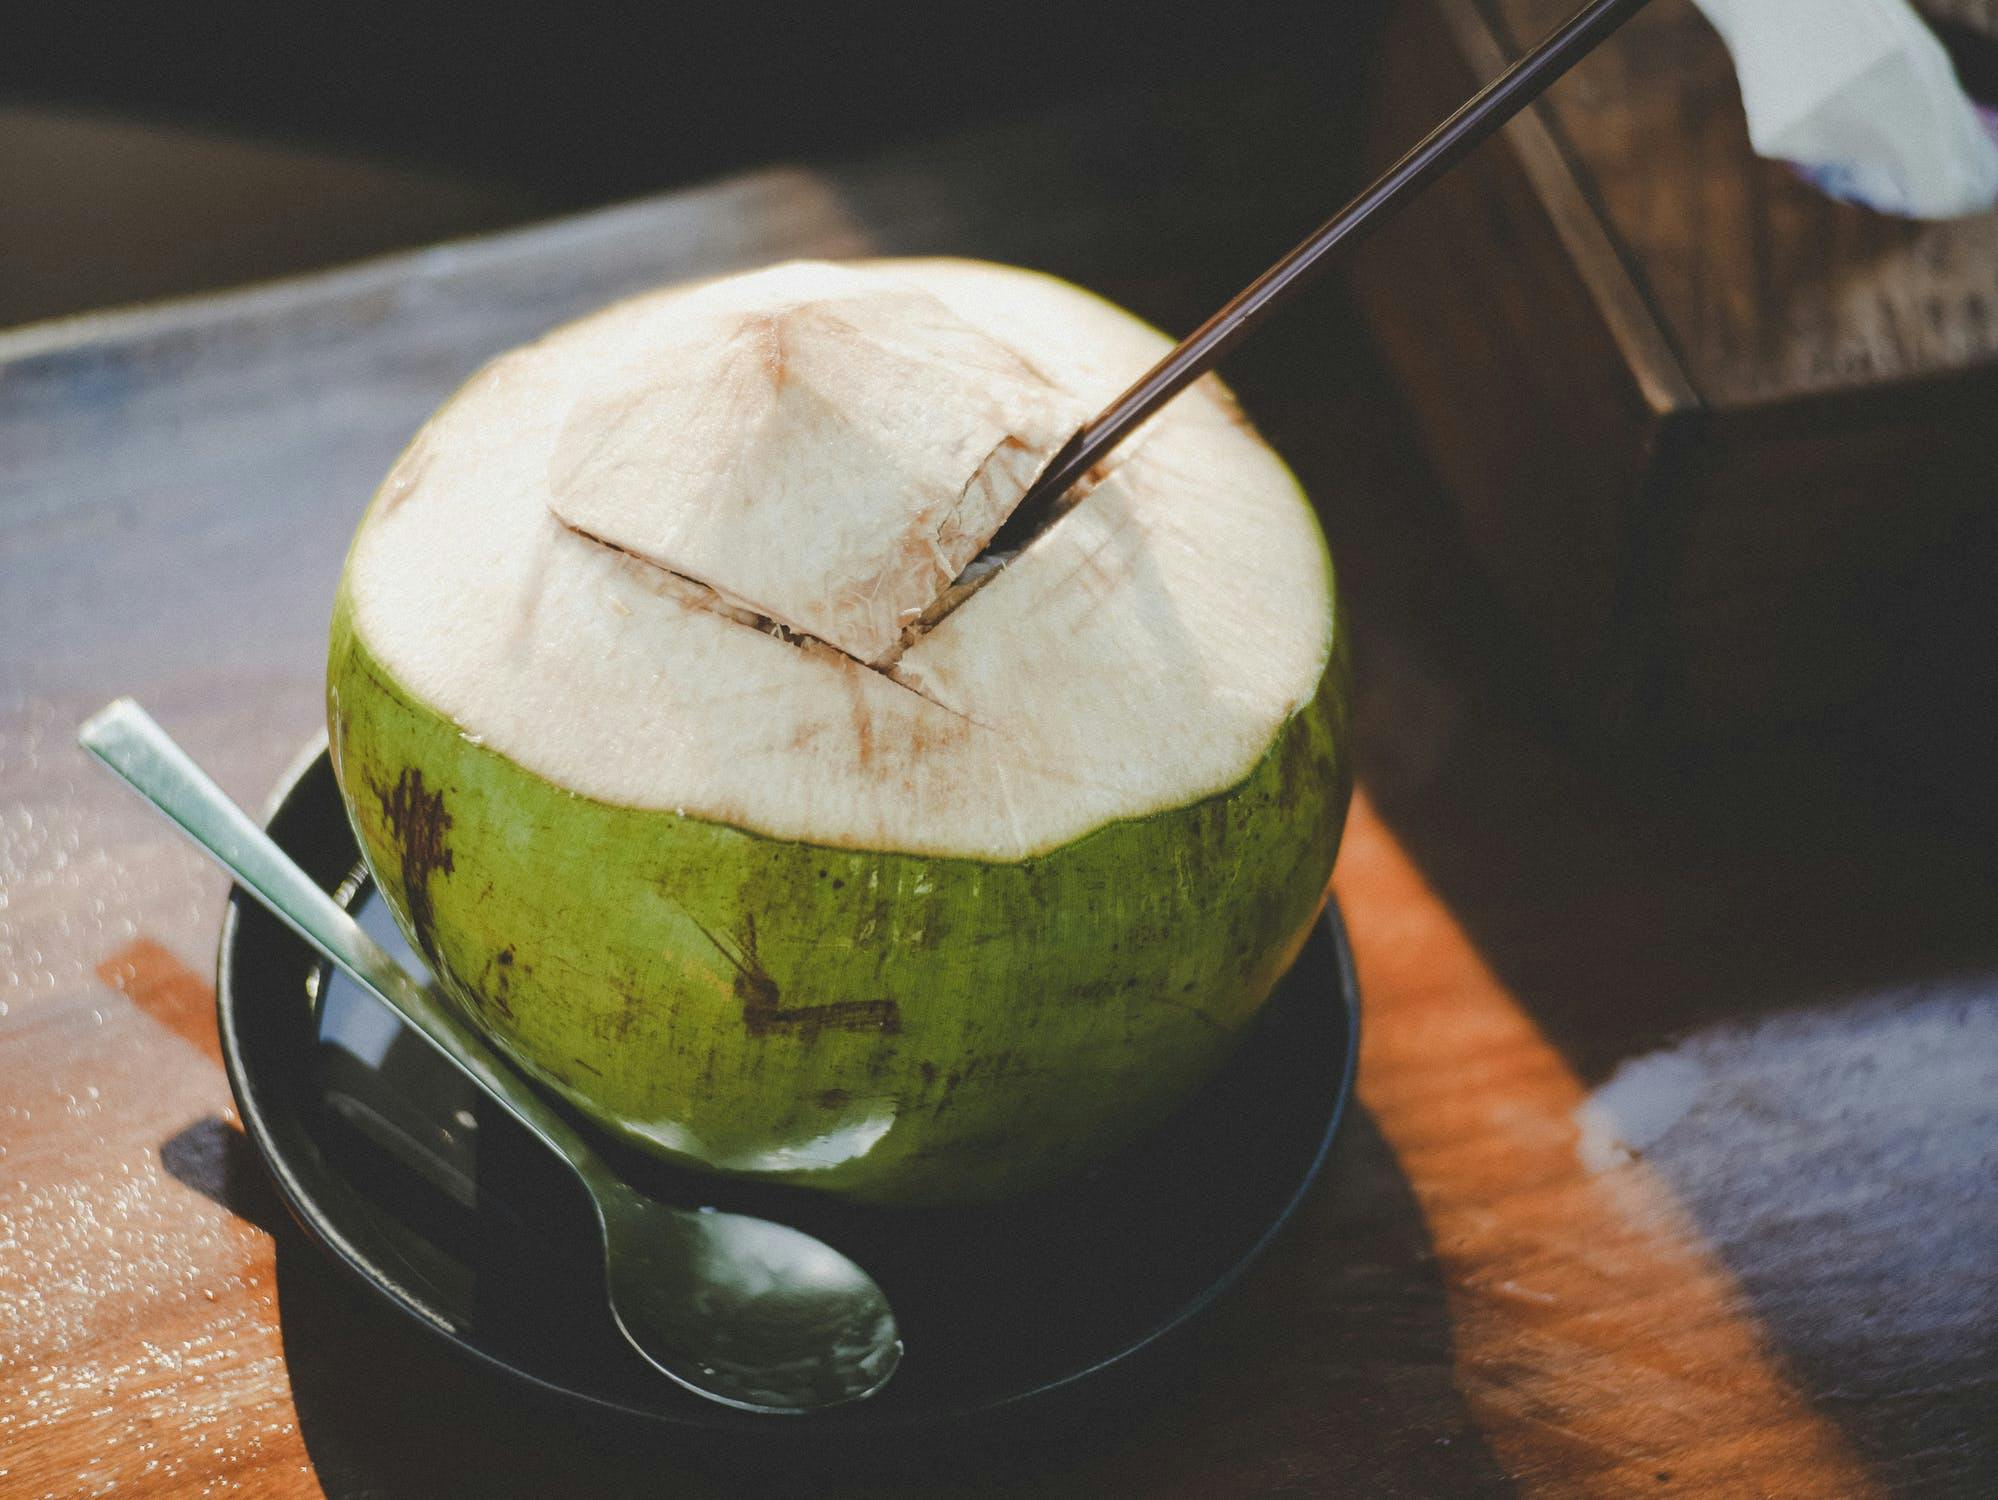 Vaïvaï Eau de coco 100% naturelle, à boire trés frais. Moins sucré